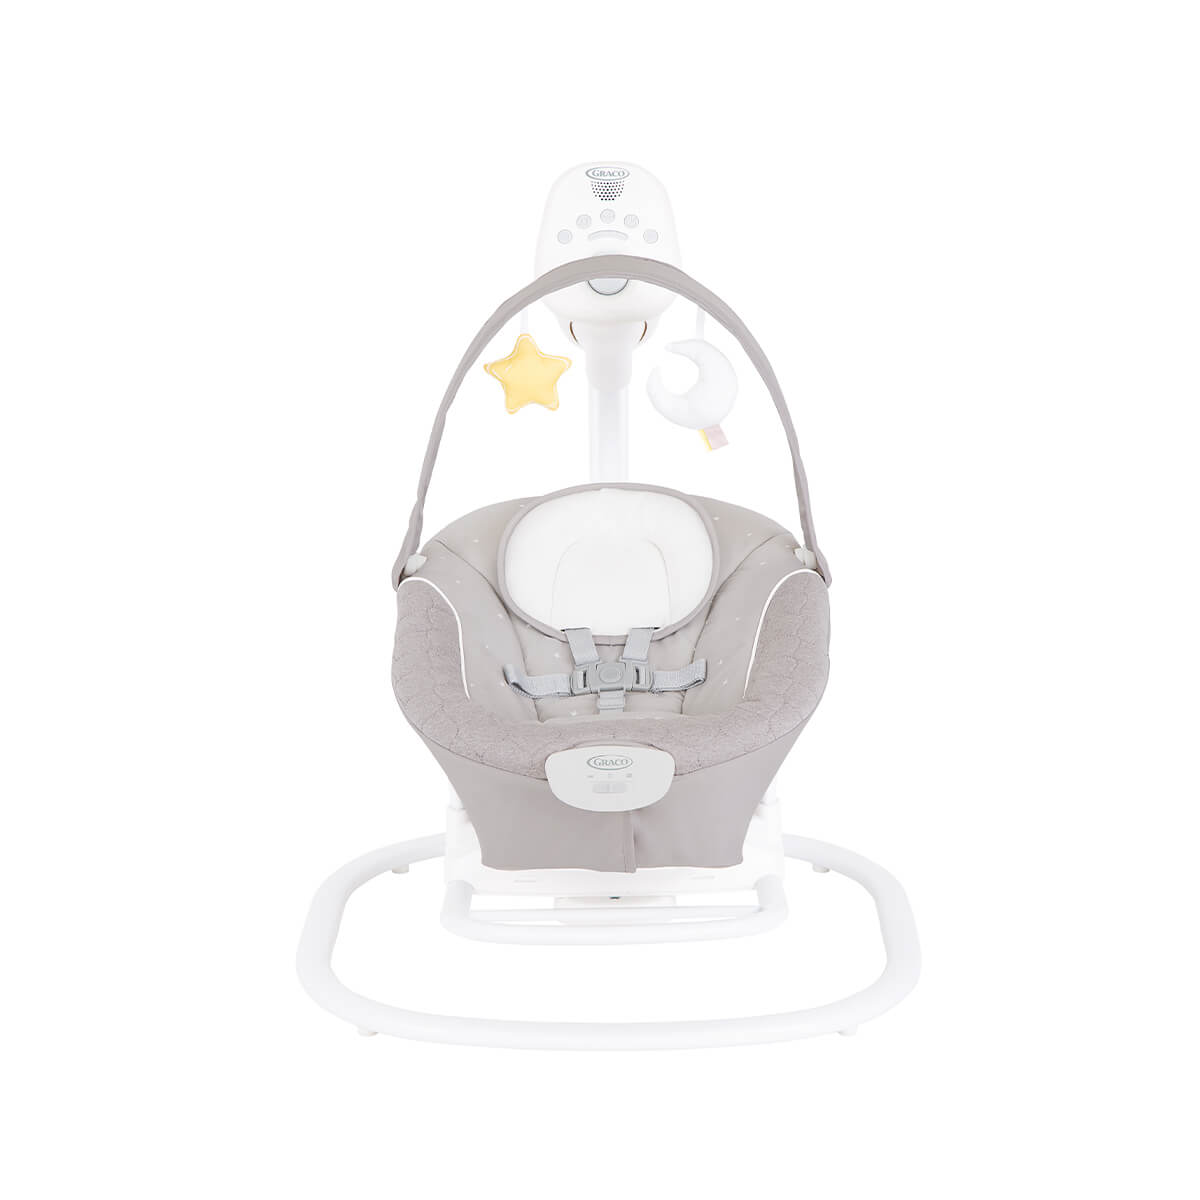 Graco® SoftSway™ elektrische Babyschaukel | schaukelt leise und geschmeidig  | Graco Baby Deutschland